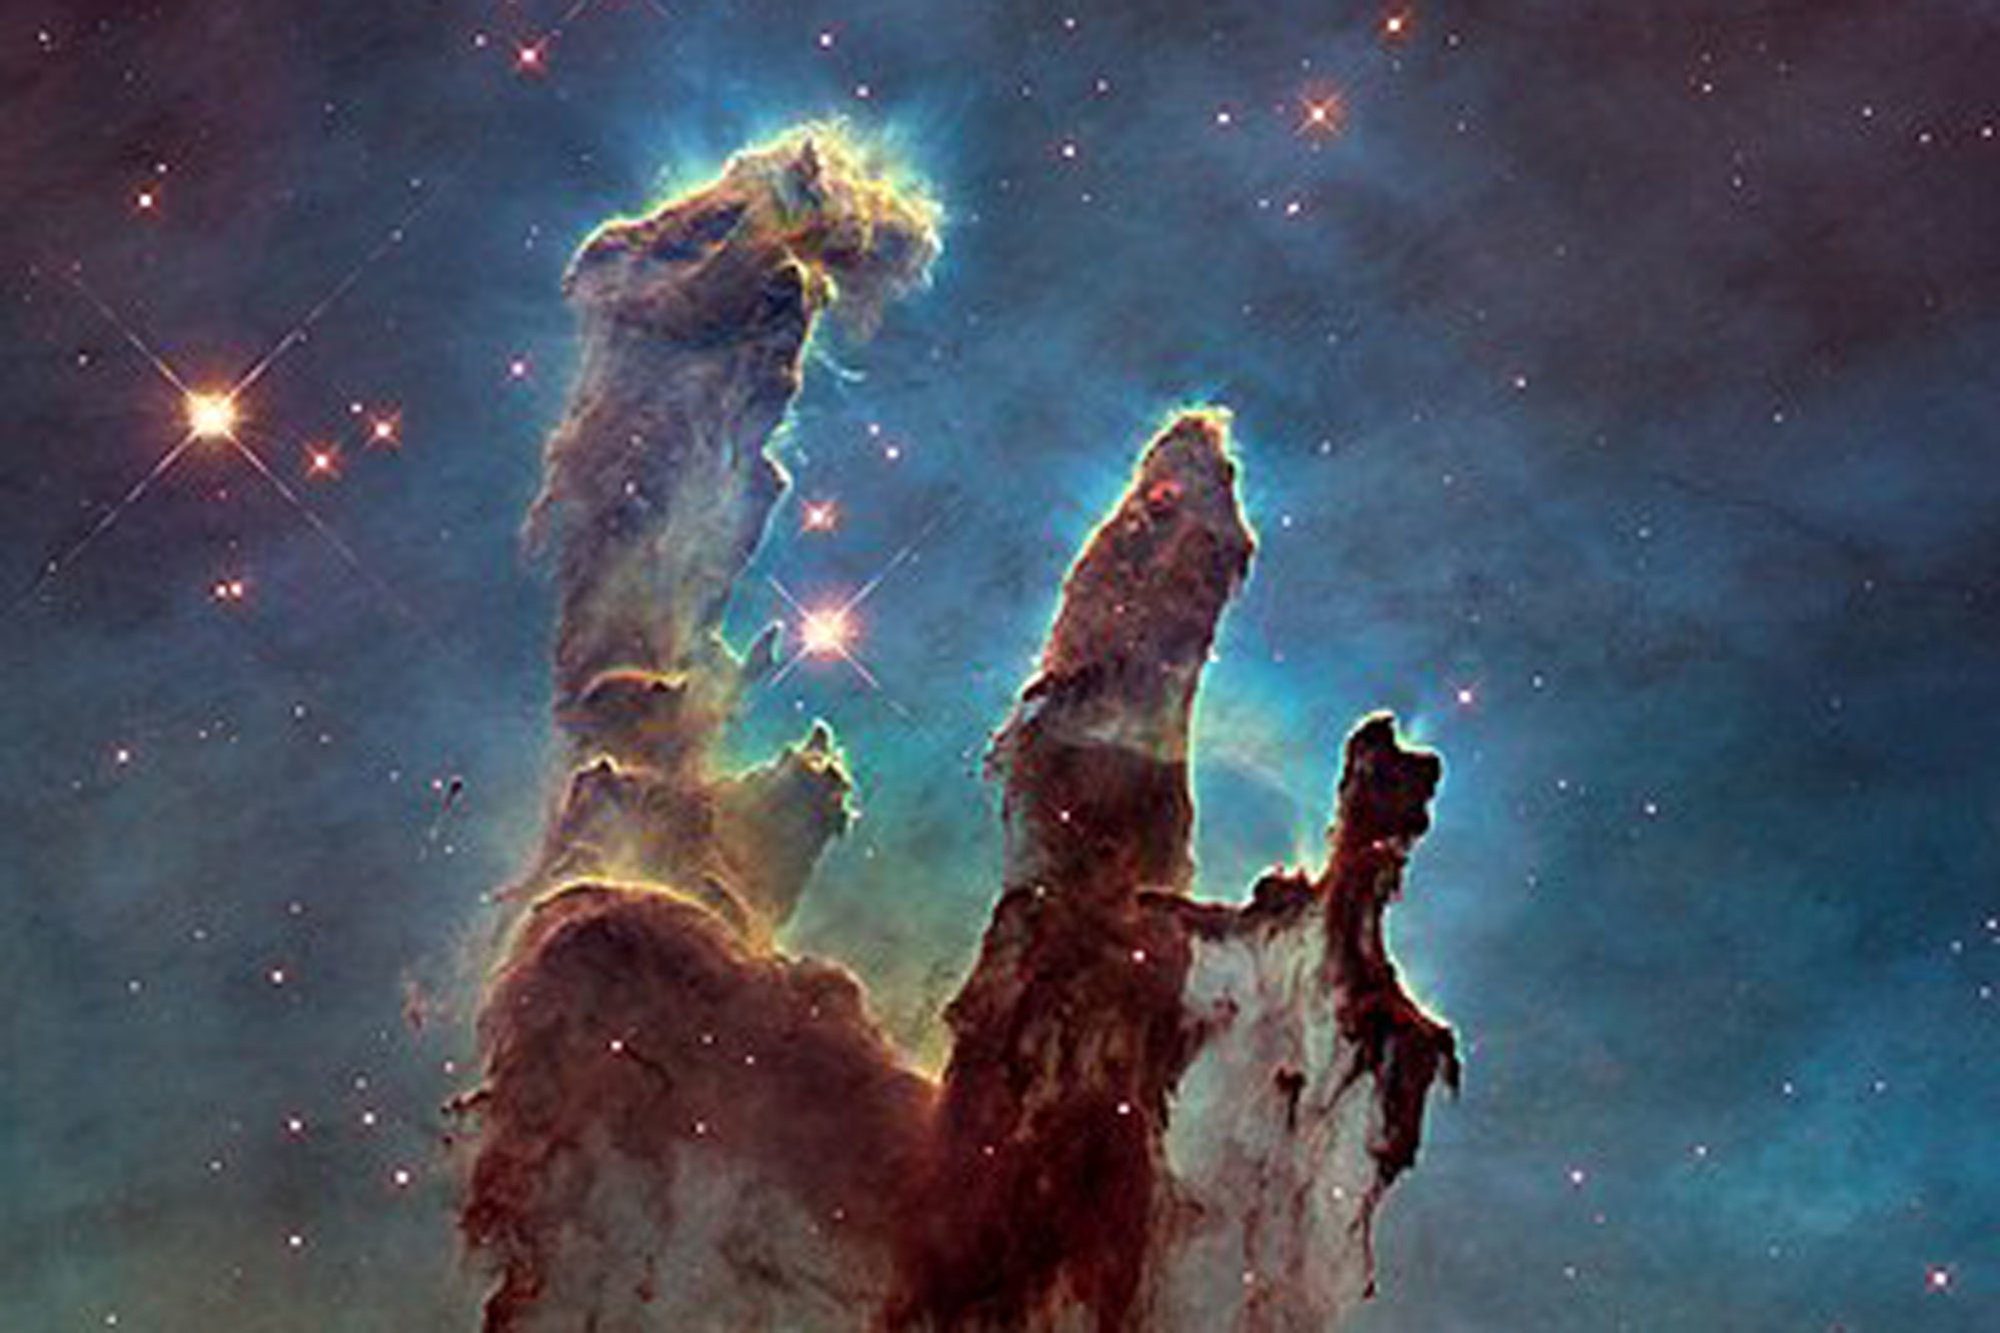 Deze legendarische foto van de Pilaren der Creatie, een deel van de Adelaarsnevel, werd genomen door Hubble in 1995., NASA/ESA Hubble Space Telescope